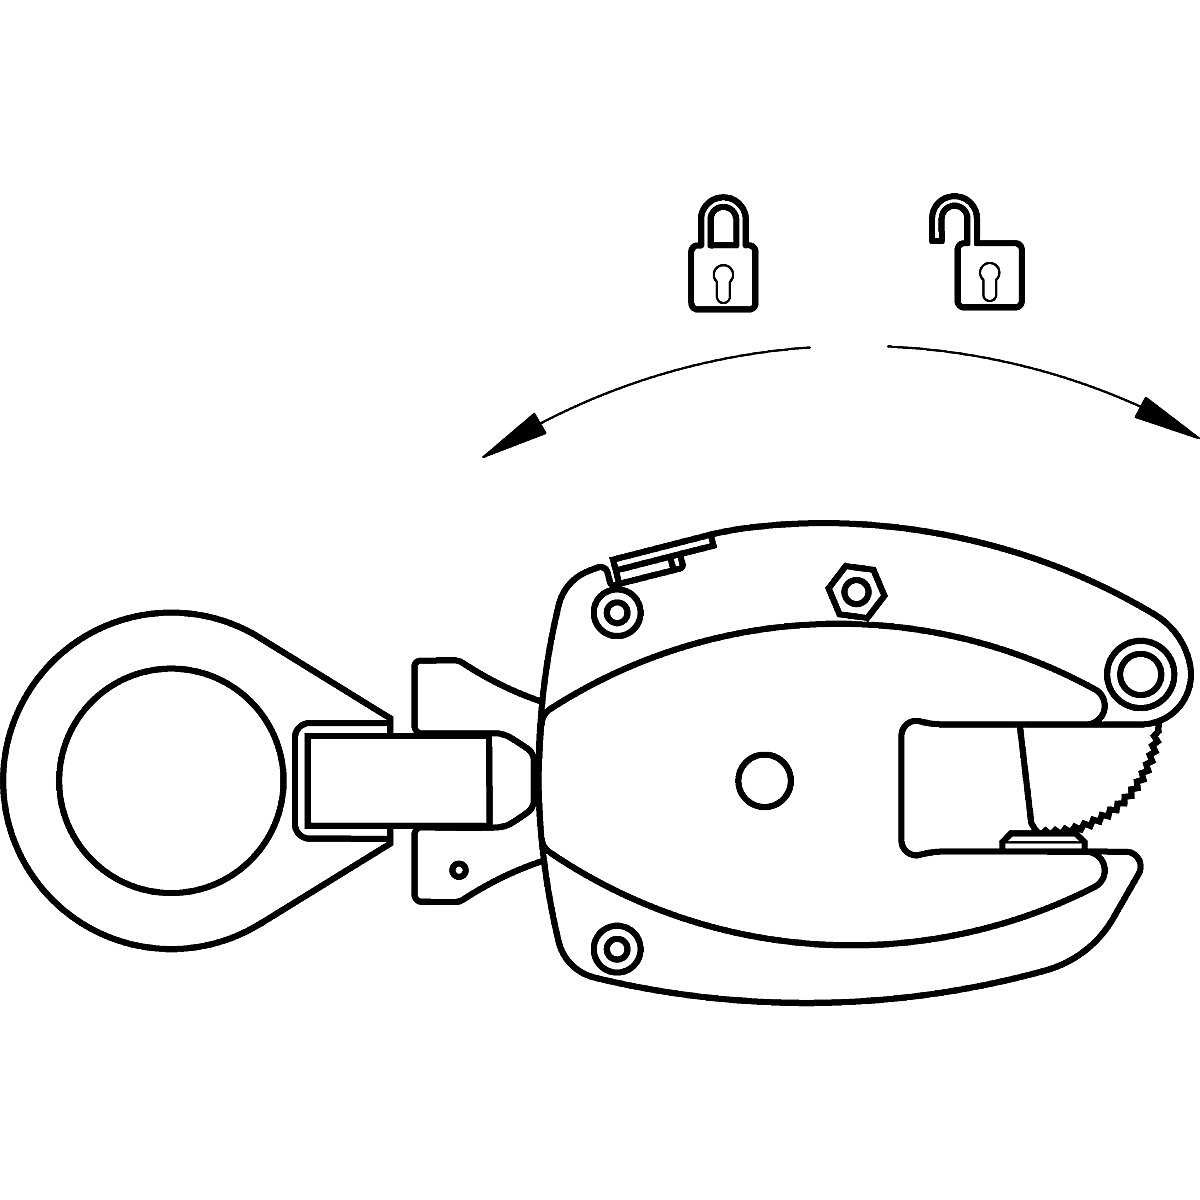 Clemă de suspensie model KL, utilizare pe verticală – Pfeifer (Imagine produs 5)-4